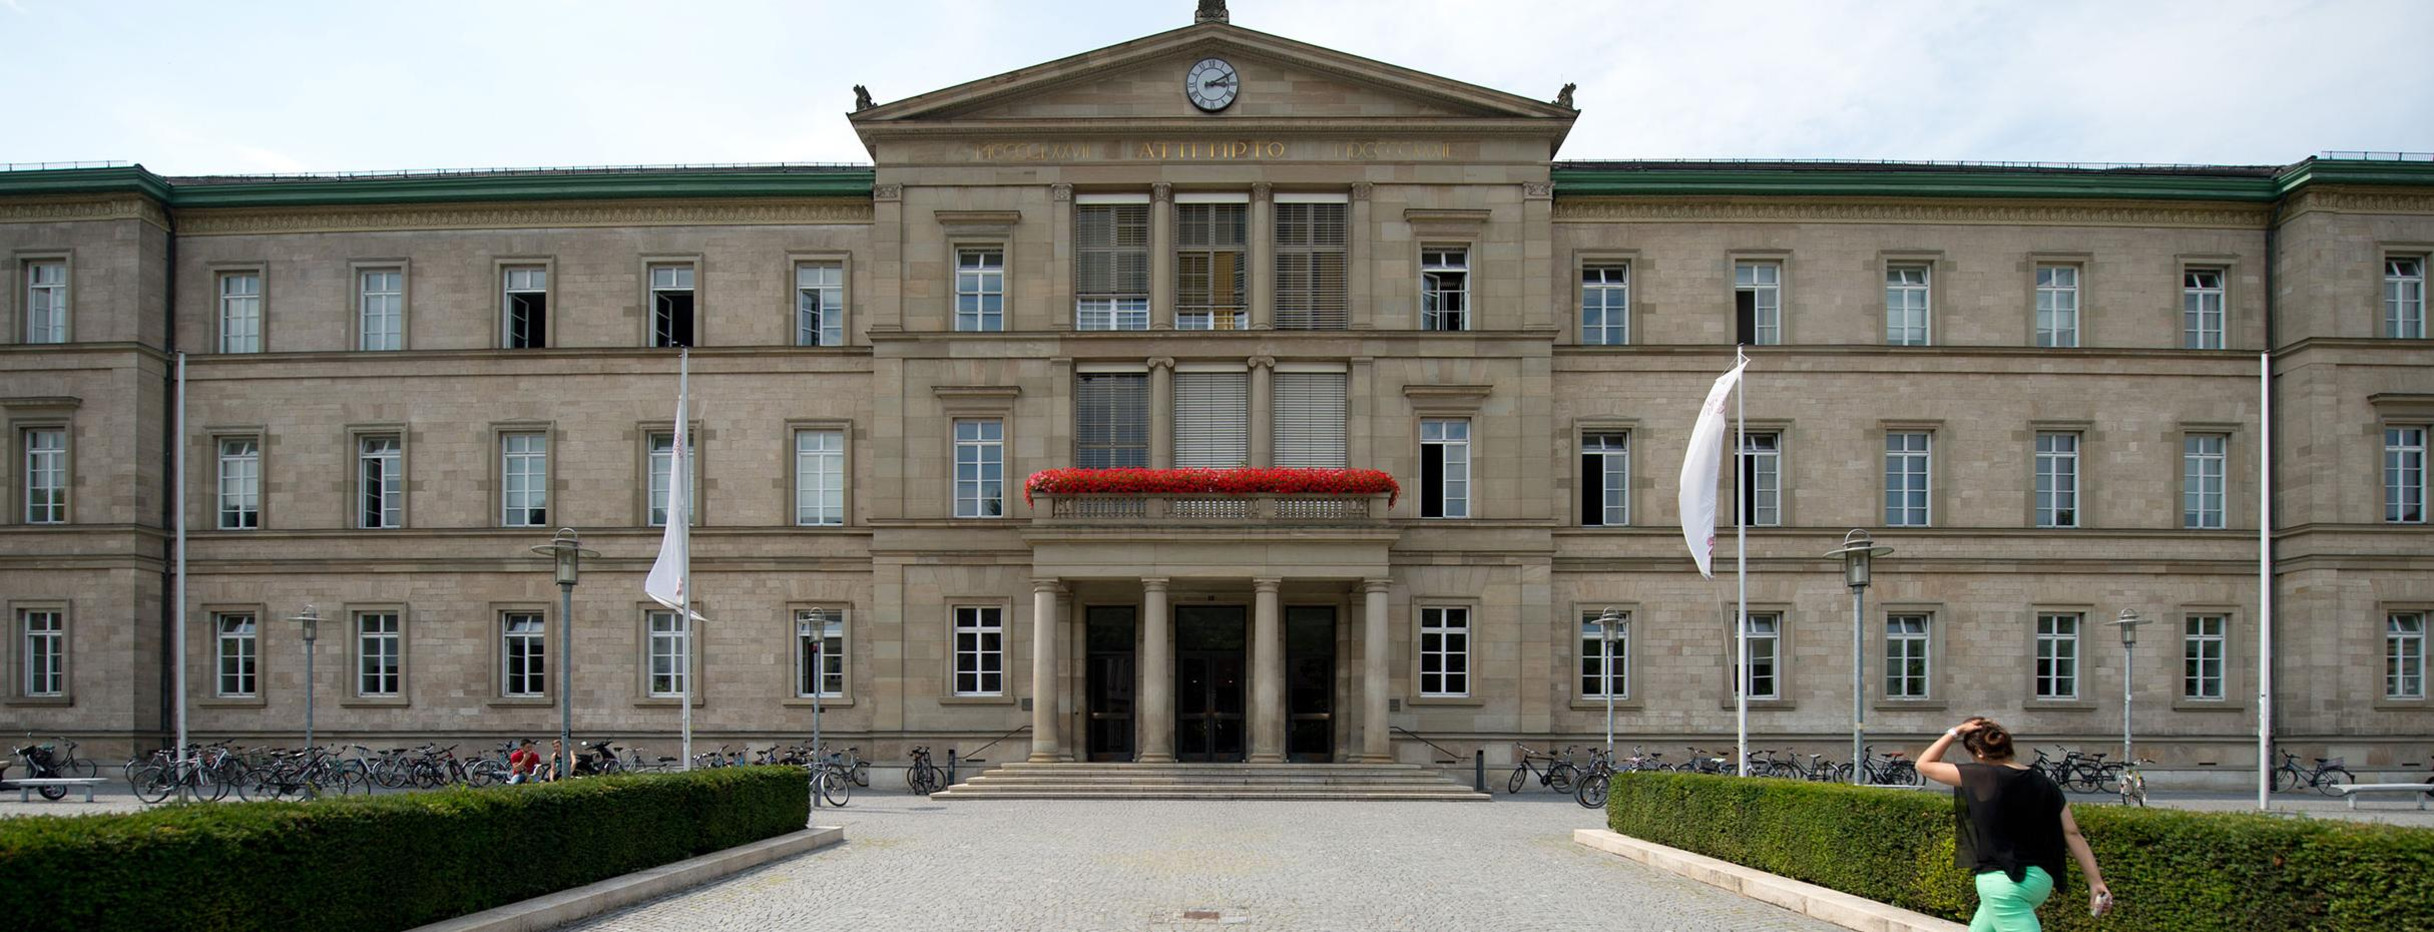 Neue Aula der Eberhard Karls Universität in Tübingen.